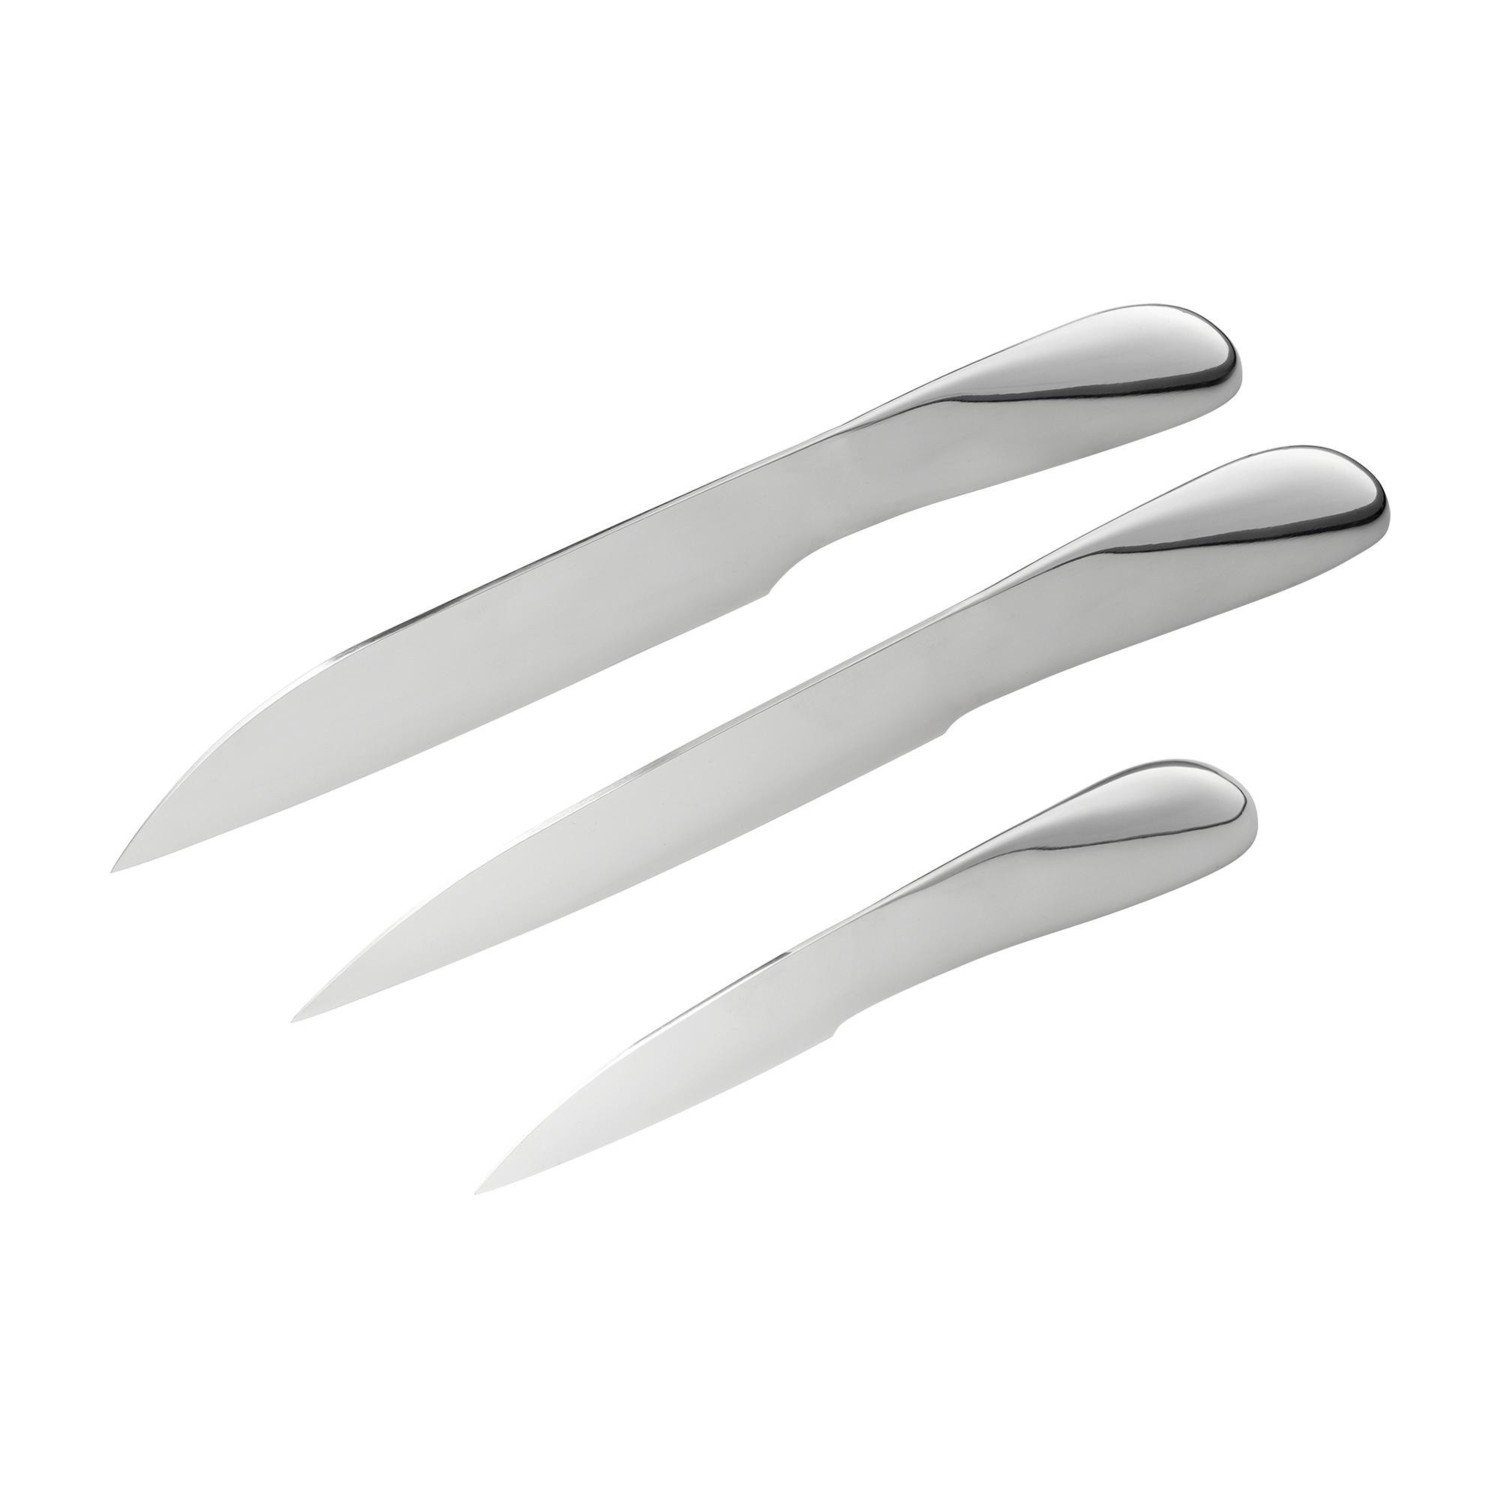 PHILIPPI Allzweckmesser Messerset Space 3tlg | Messersets